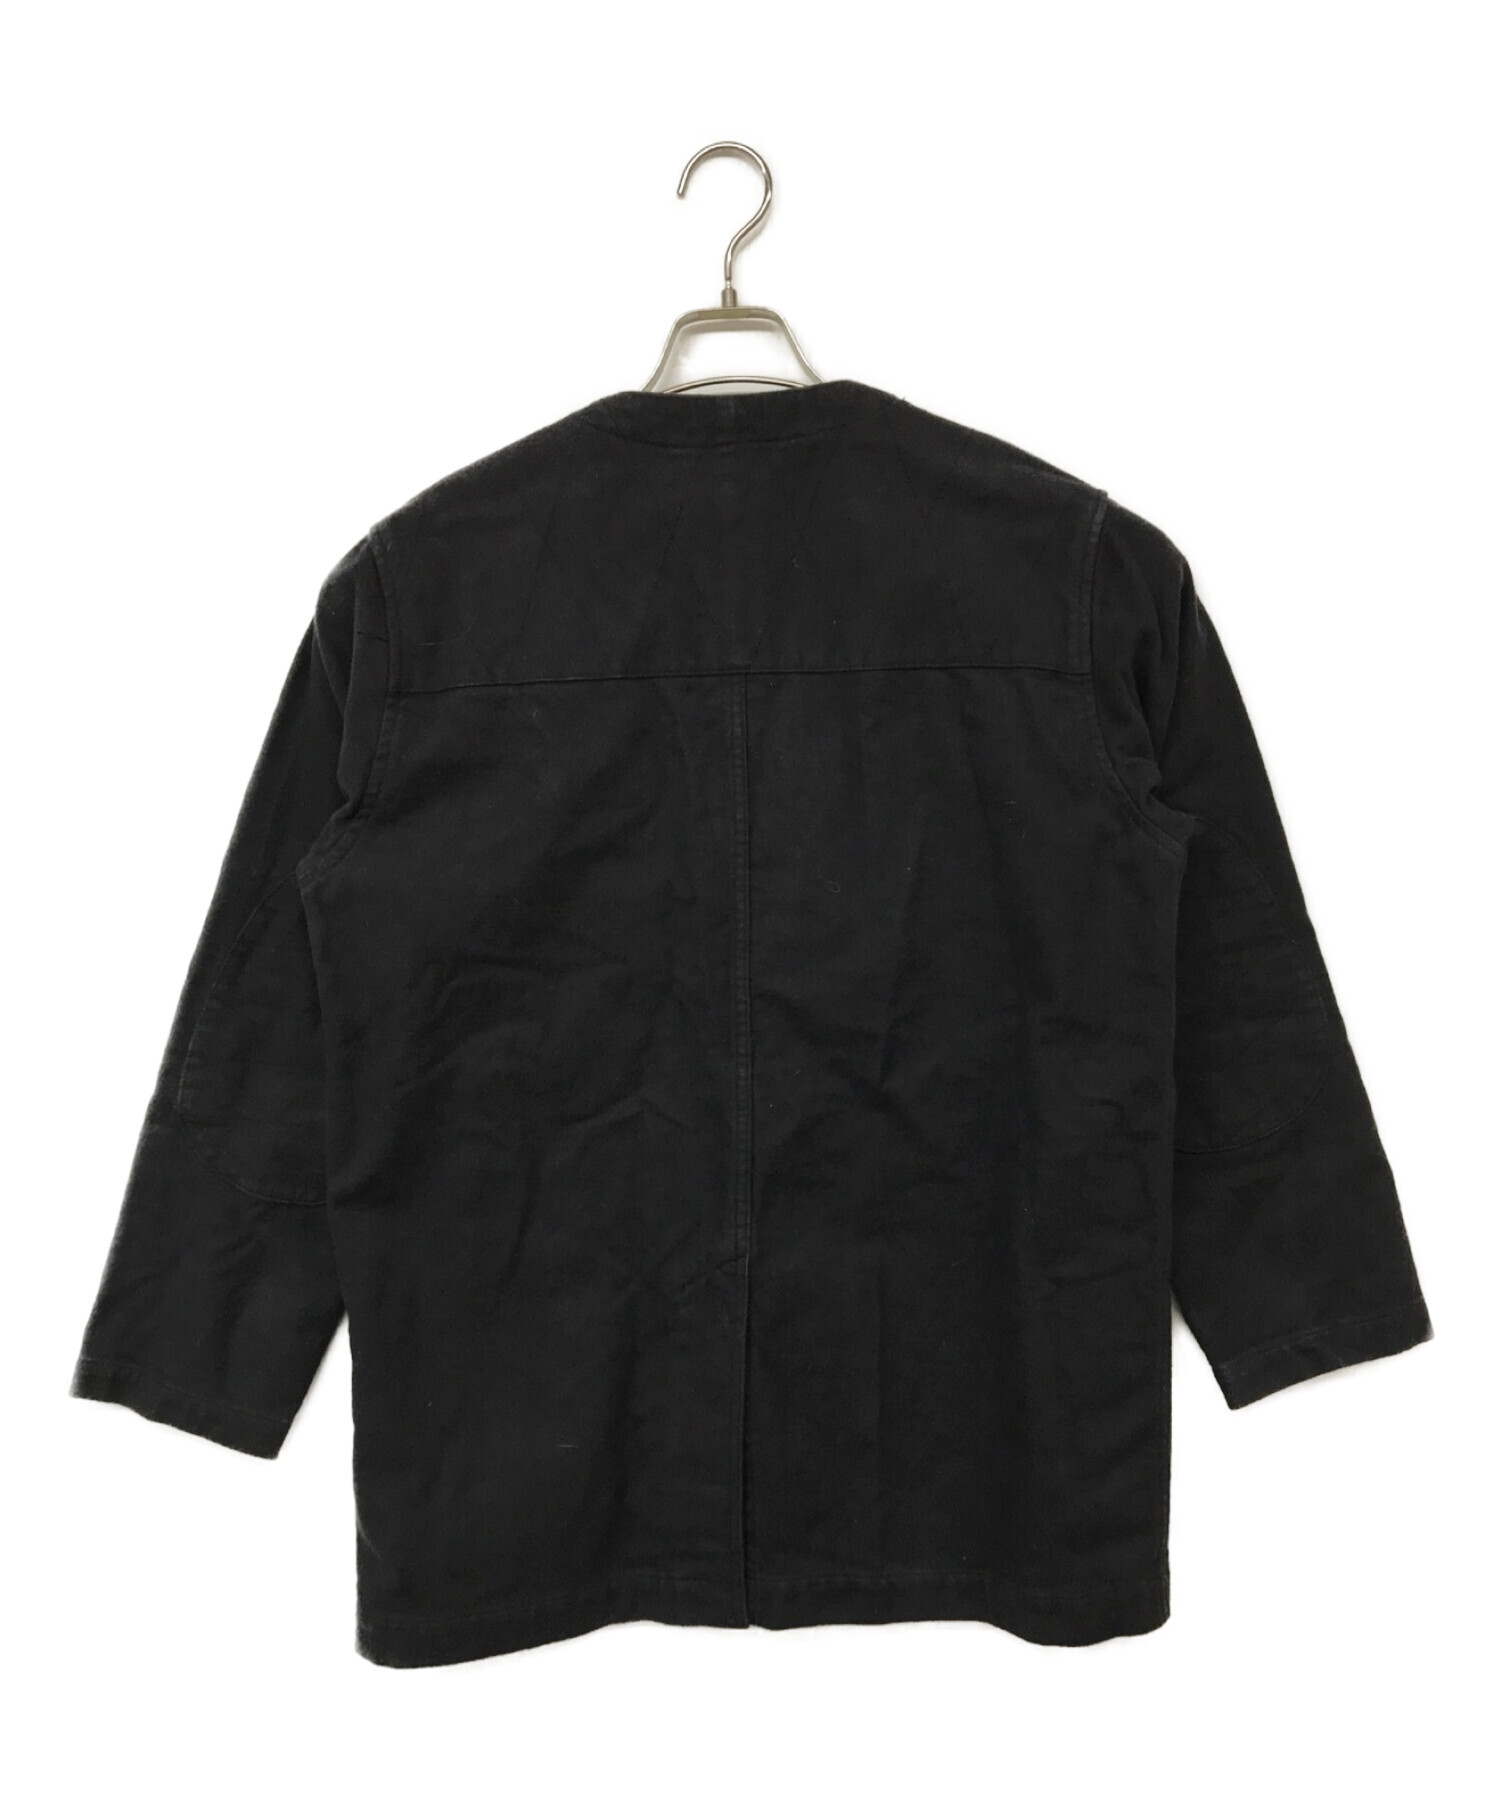 Snow peak (スノーピーク) Army Cloth Jacket/アーミークロスジャケット グレー サイズ:S